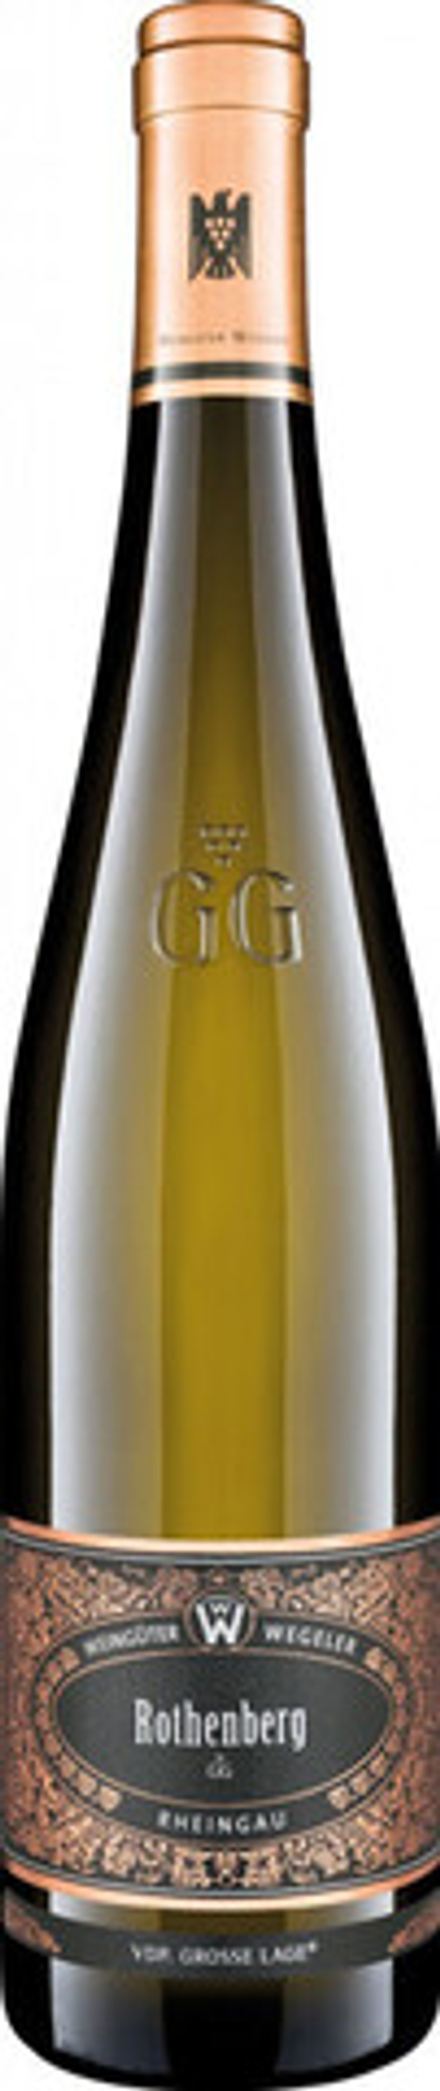 Вино Weinguter Wegeler Geisenheimer Rothenberg Riesling GG, 0,75 л.